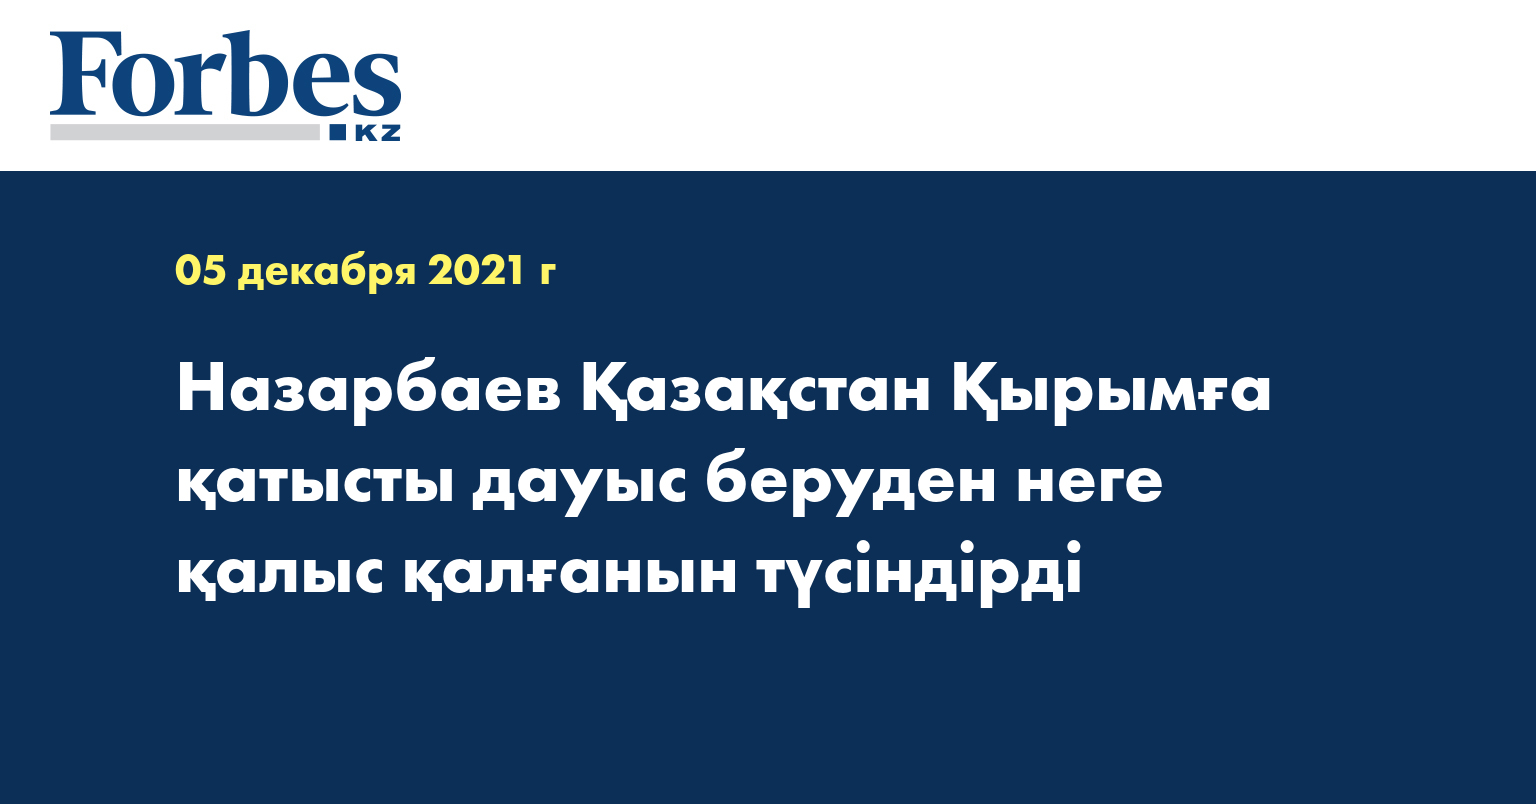 Назарбаев Қазақстан Қырымға қатысты дауыс беруден неге қалыс қалғанын түсіндірді